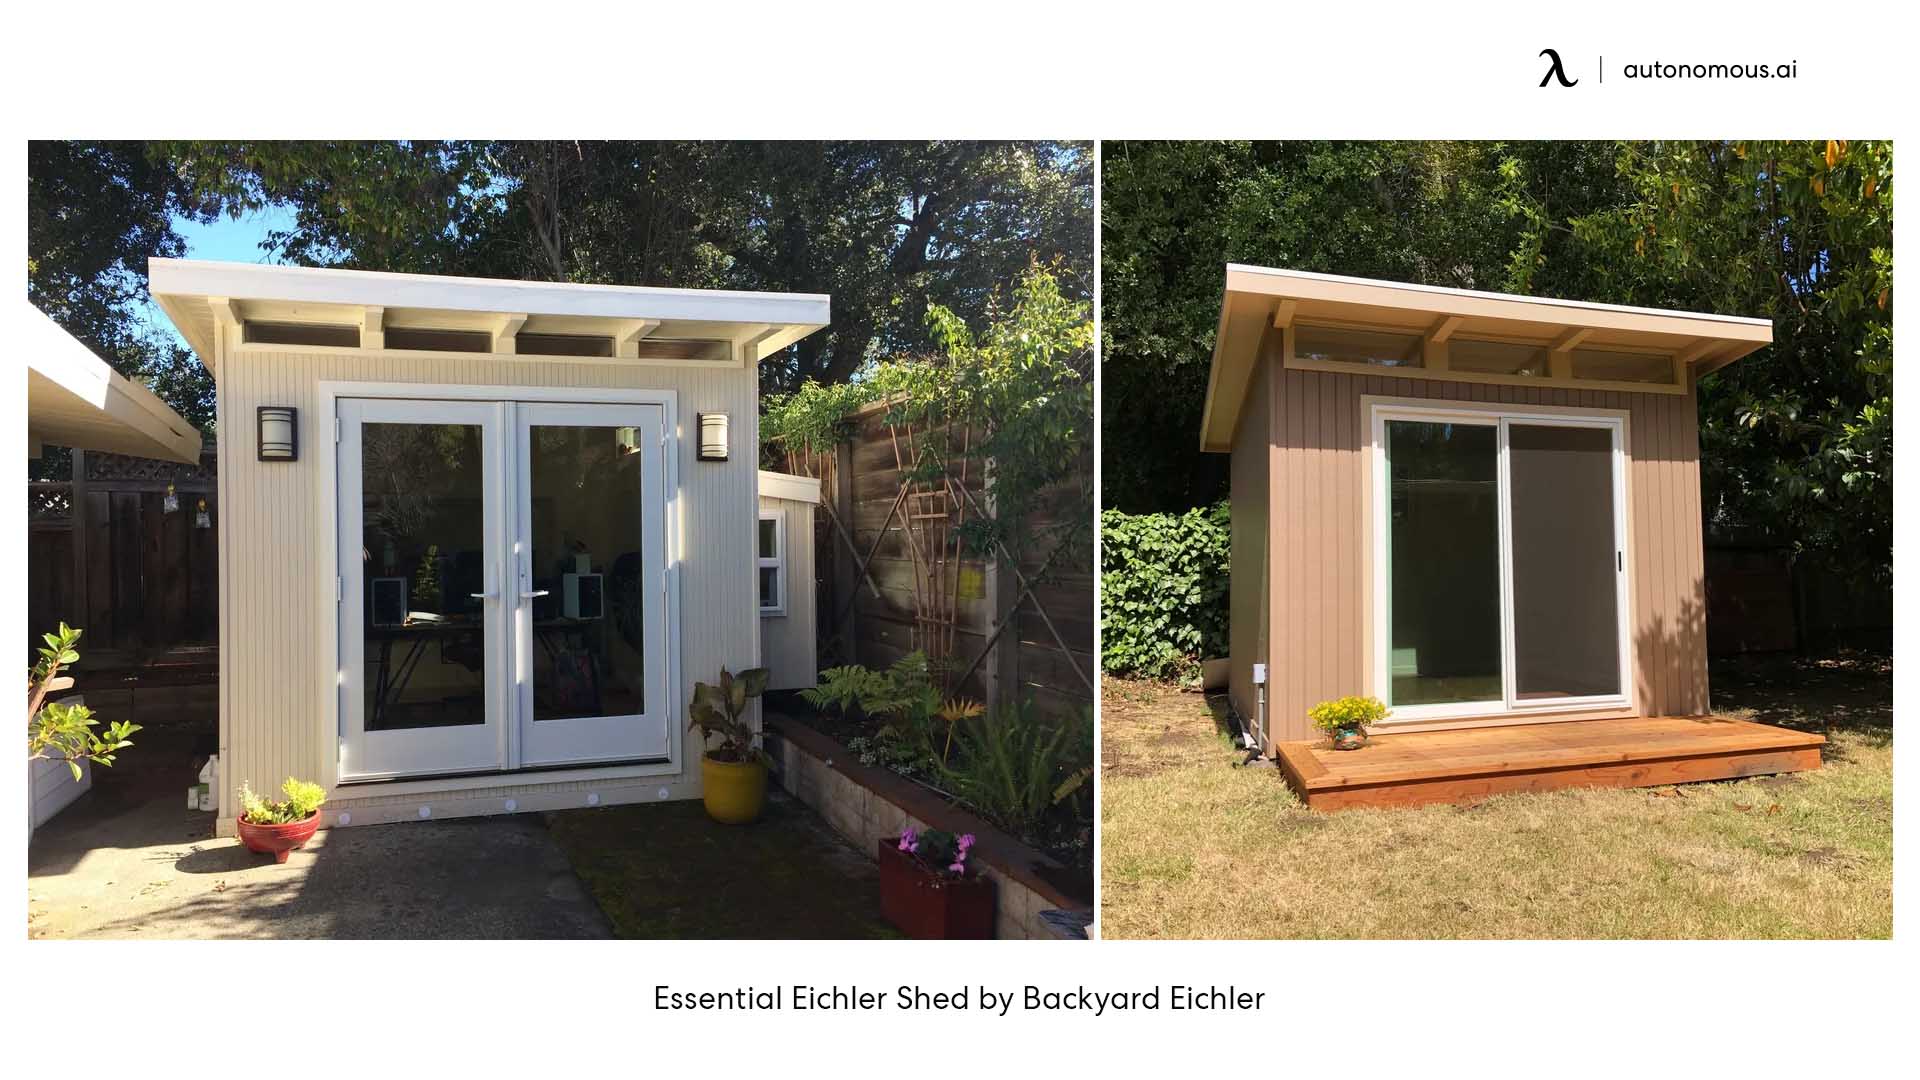 Essential Eichler Shed by Backyard Eichler